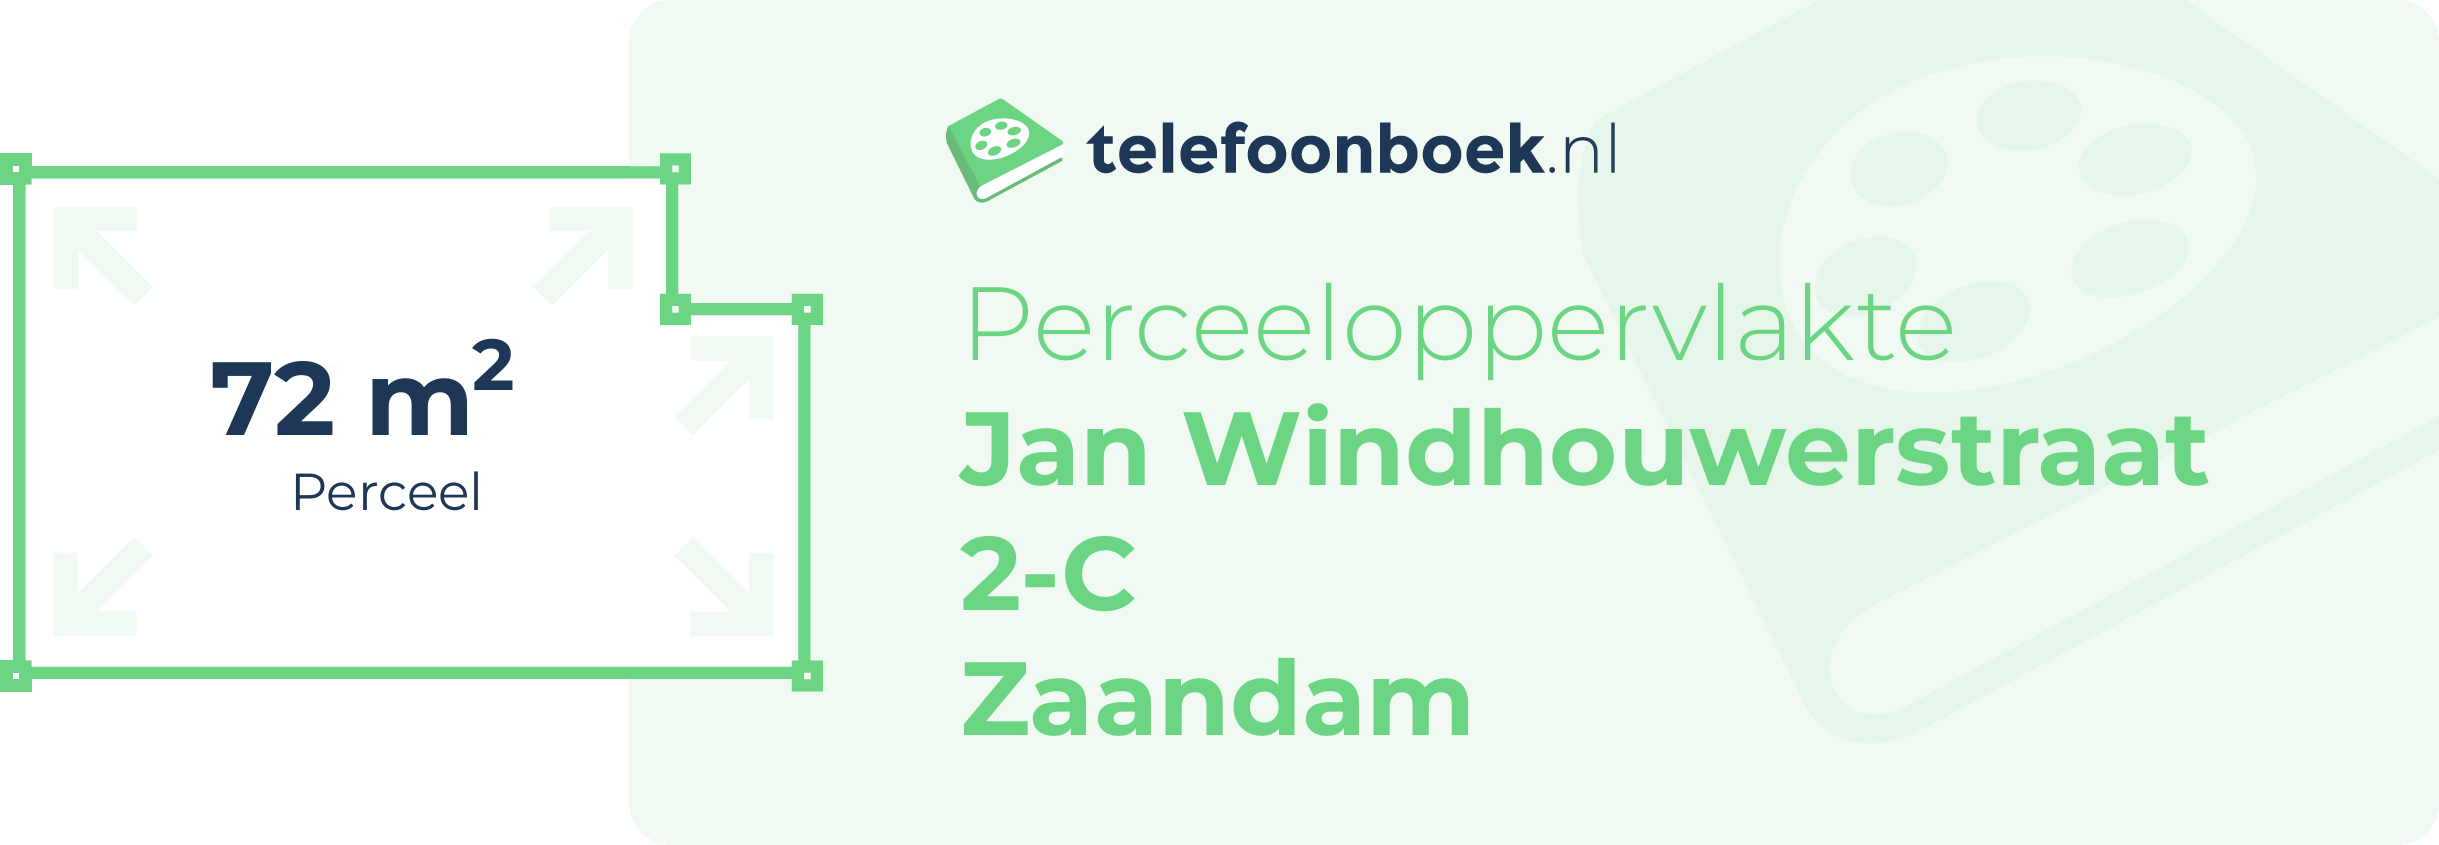 Perceeloppervlakte Jan Windhouwerstraat 2-C Zaandam